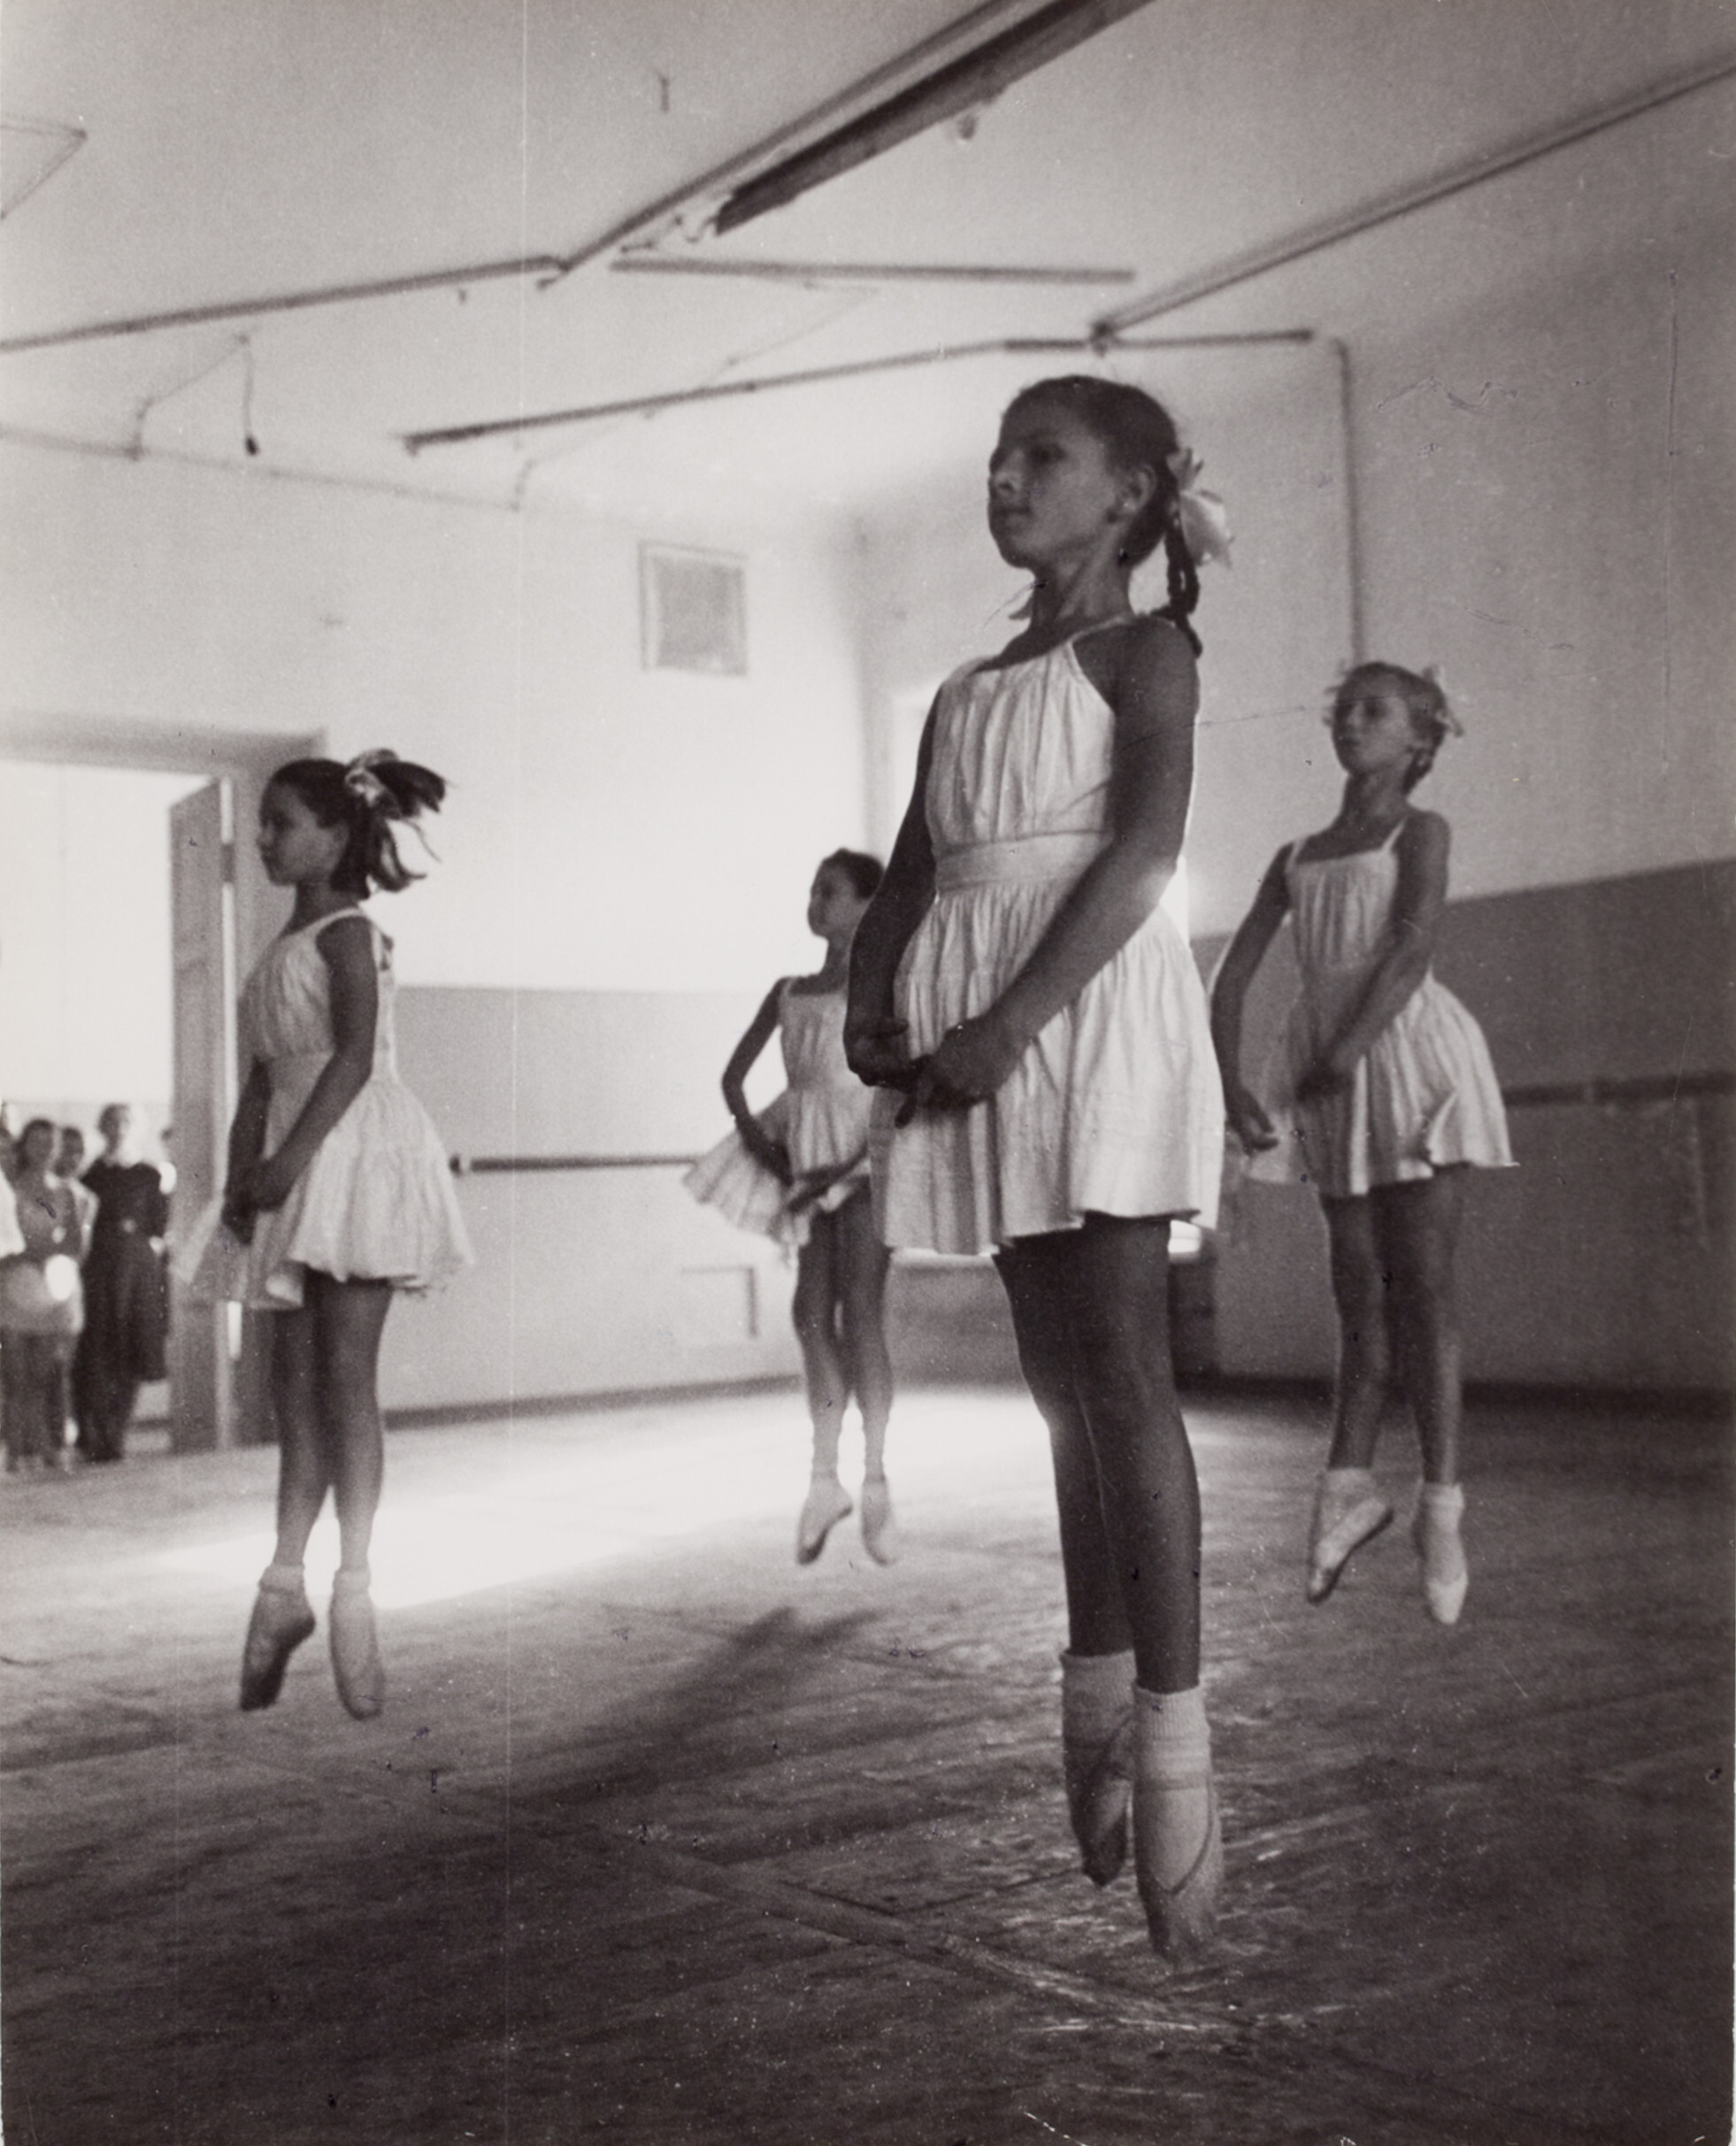 Девочки занимаются балетом, Балетная школа Большого театра, Москва, 1947 год. Фотограф Роберт Капа